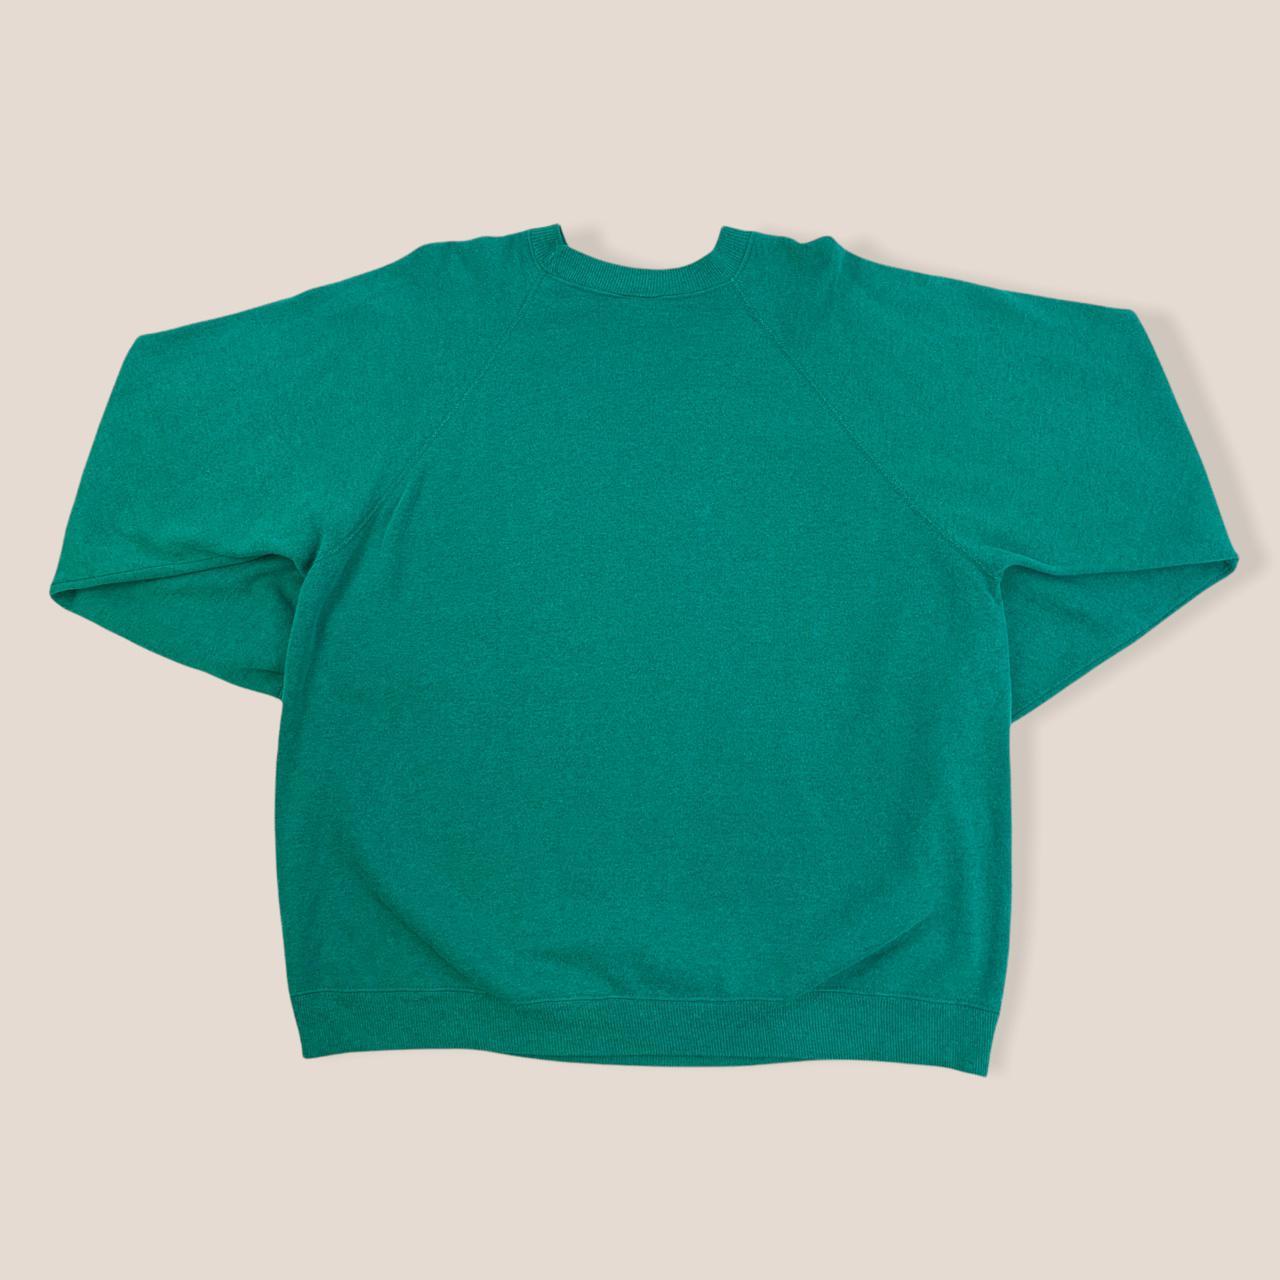 Product Image 3 - Hanes Green Sweatshirt

Hanes American Vintage